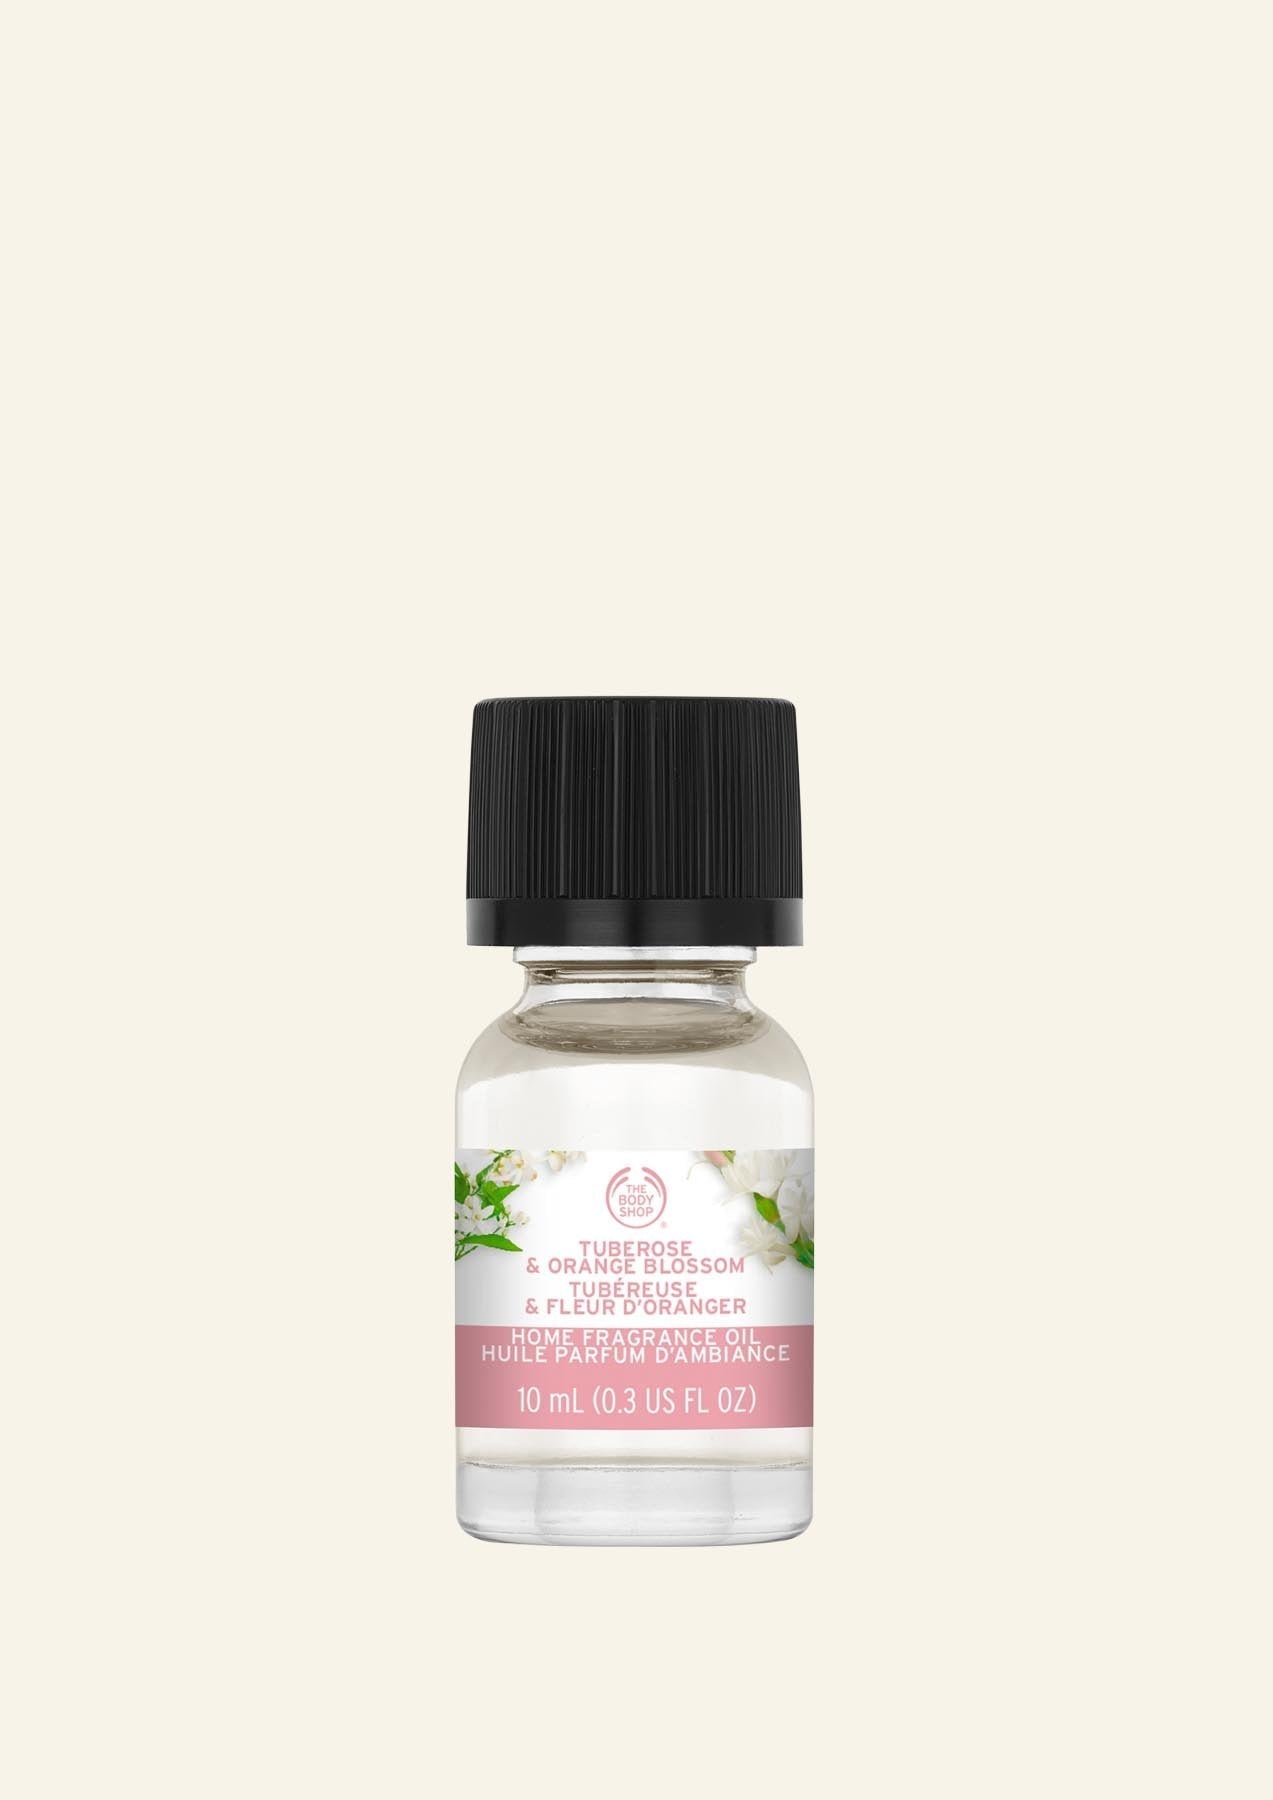 Tuberose & Orange Blossom Home Fragrance Oil